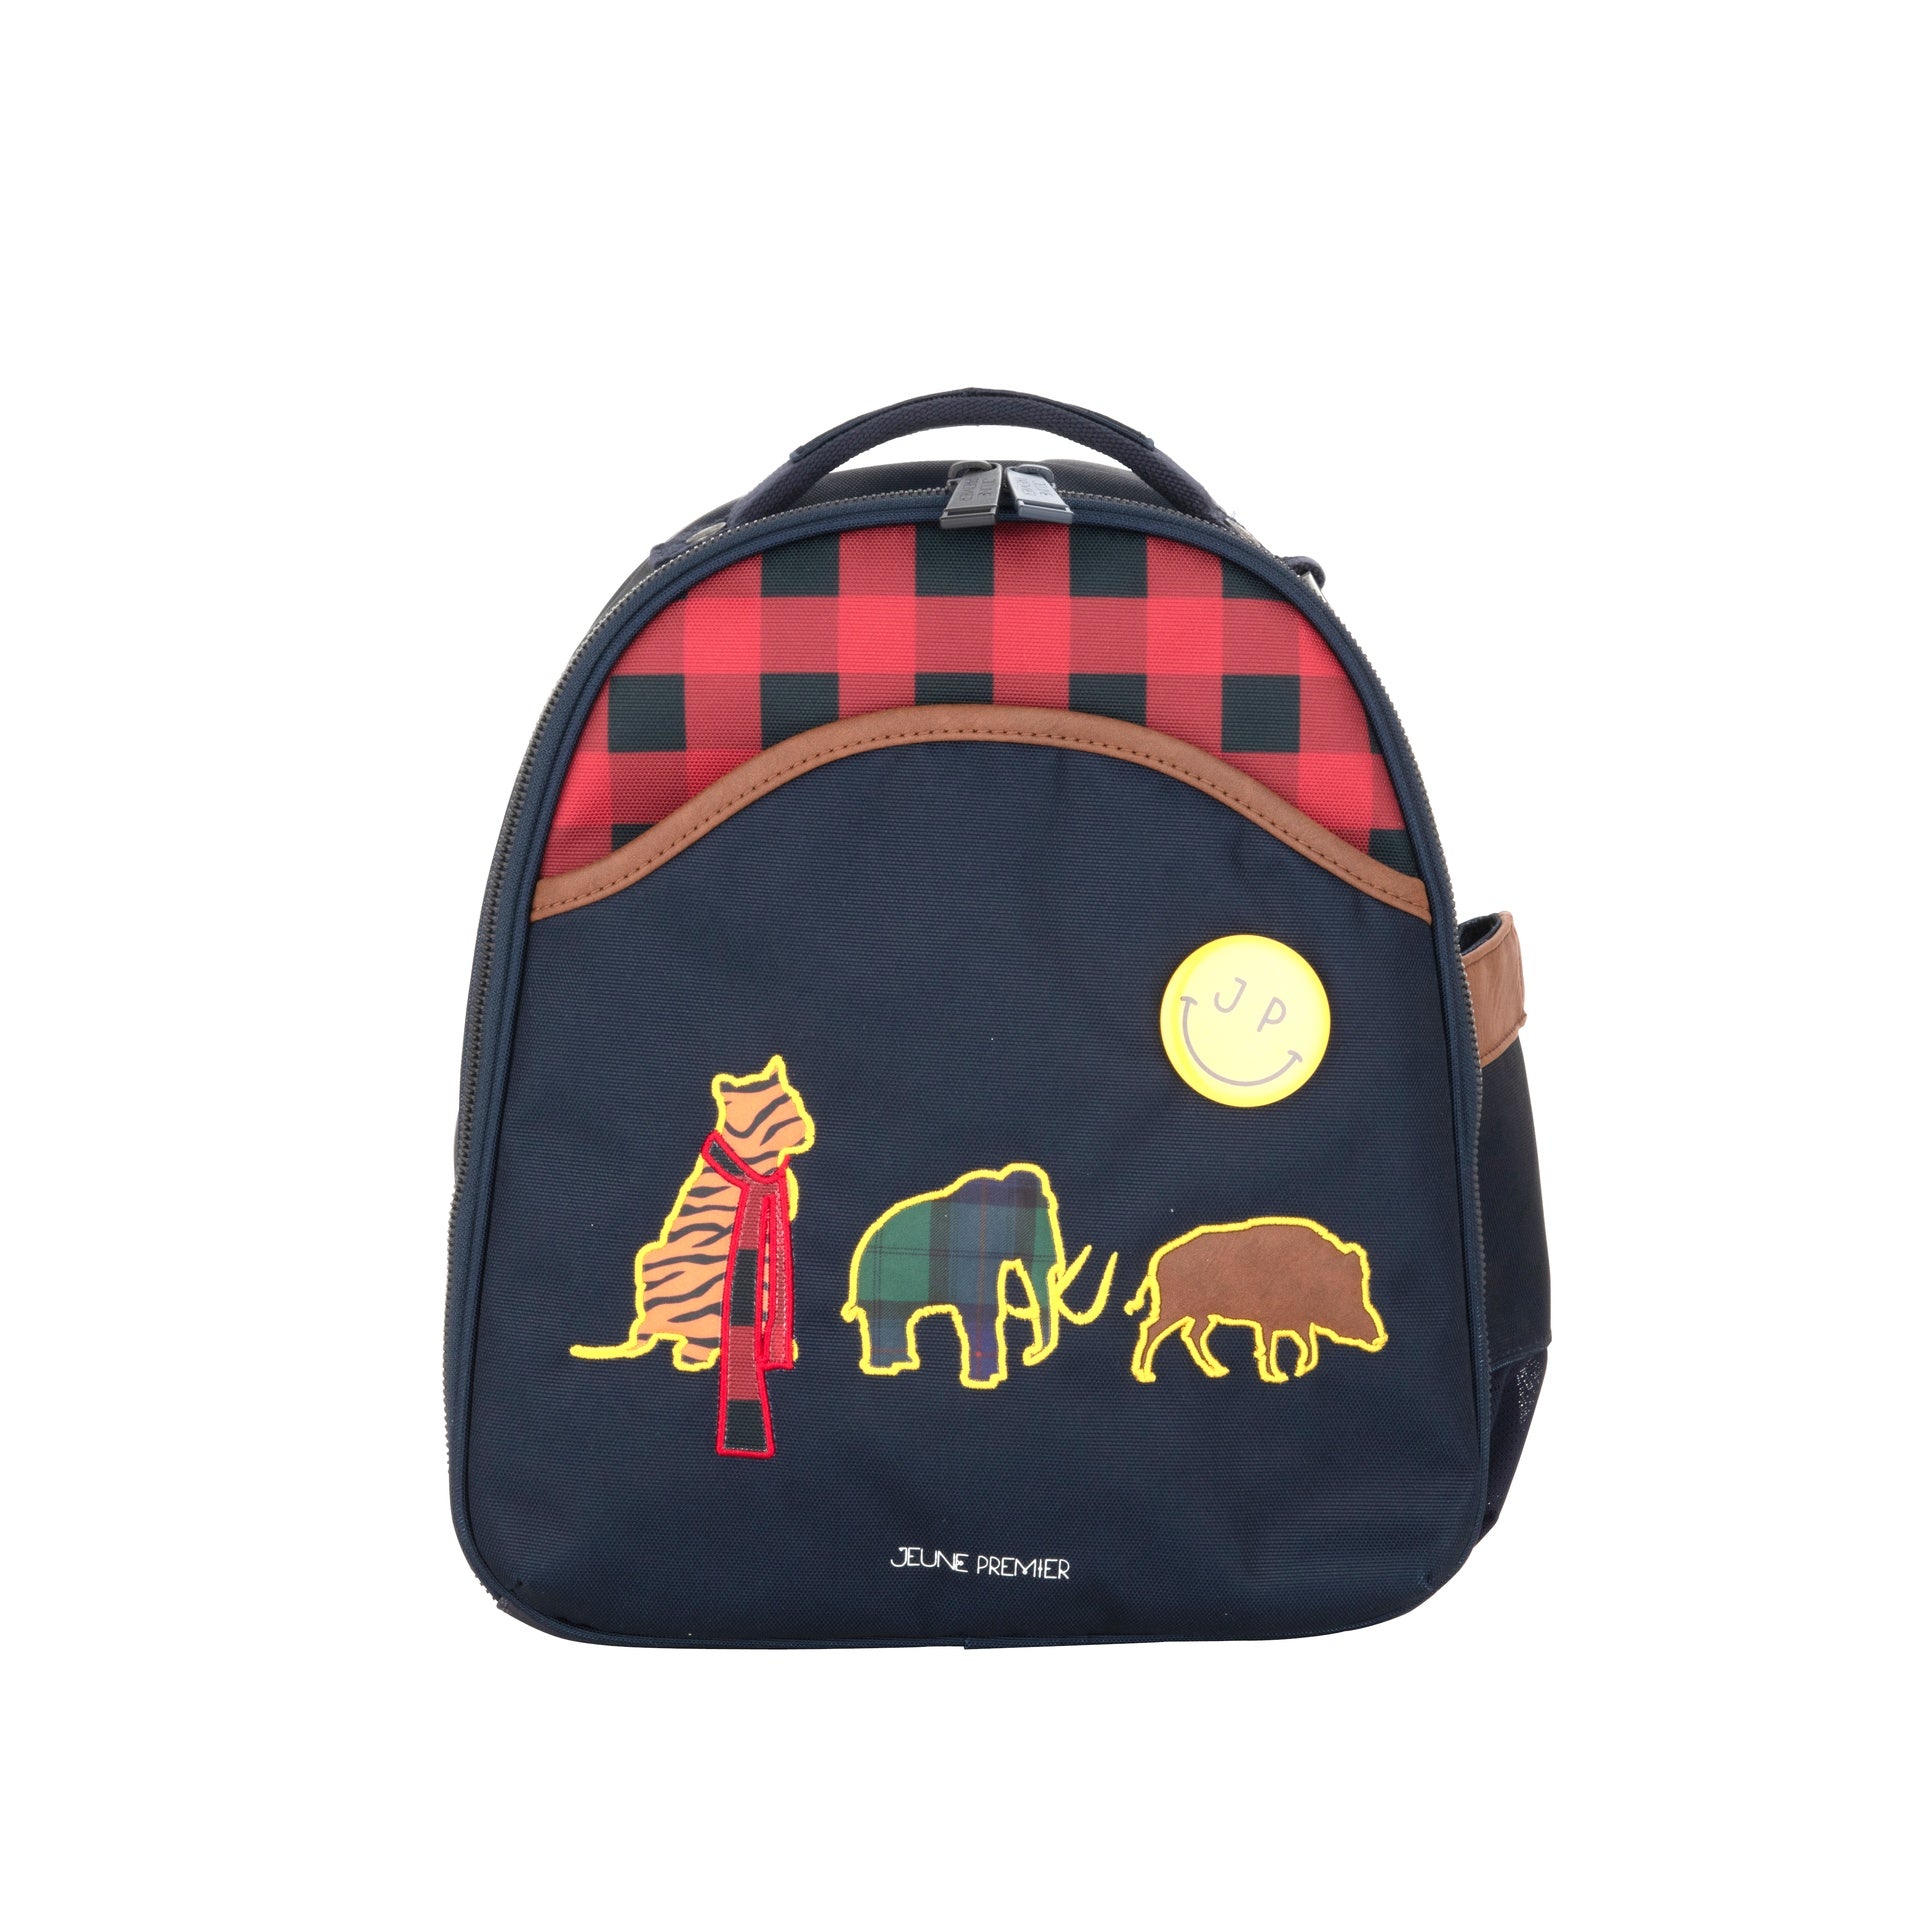 Best backpacks in the world for boys & girls - Jeune Premier